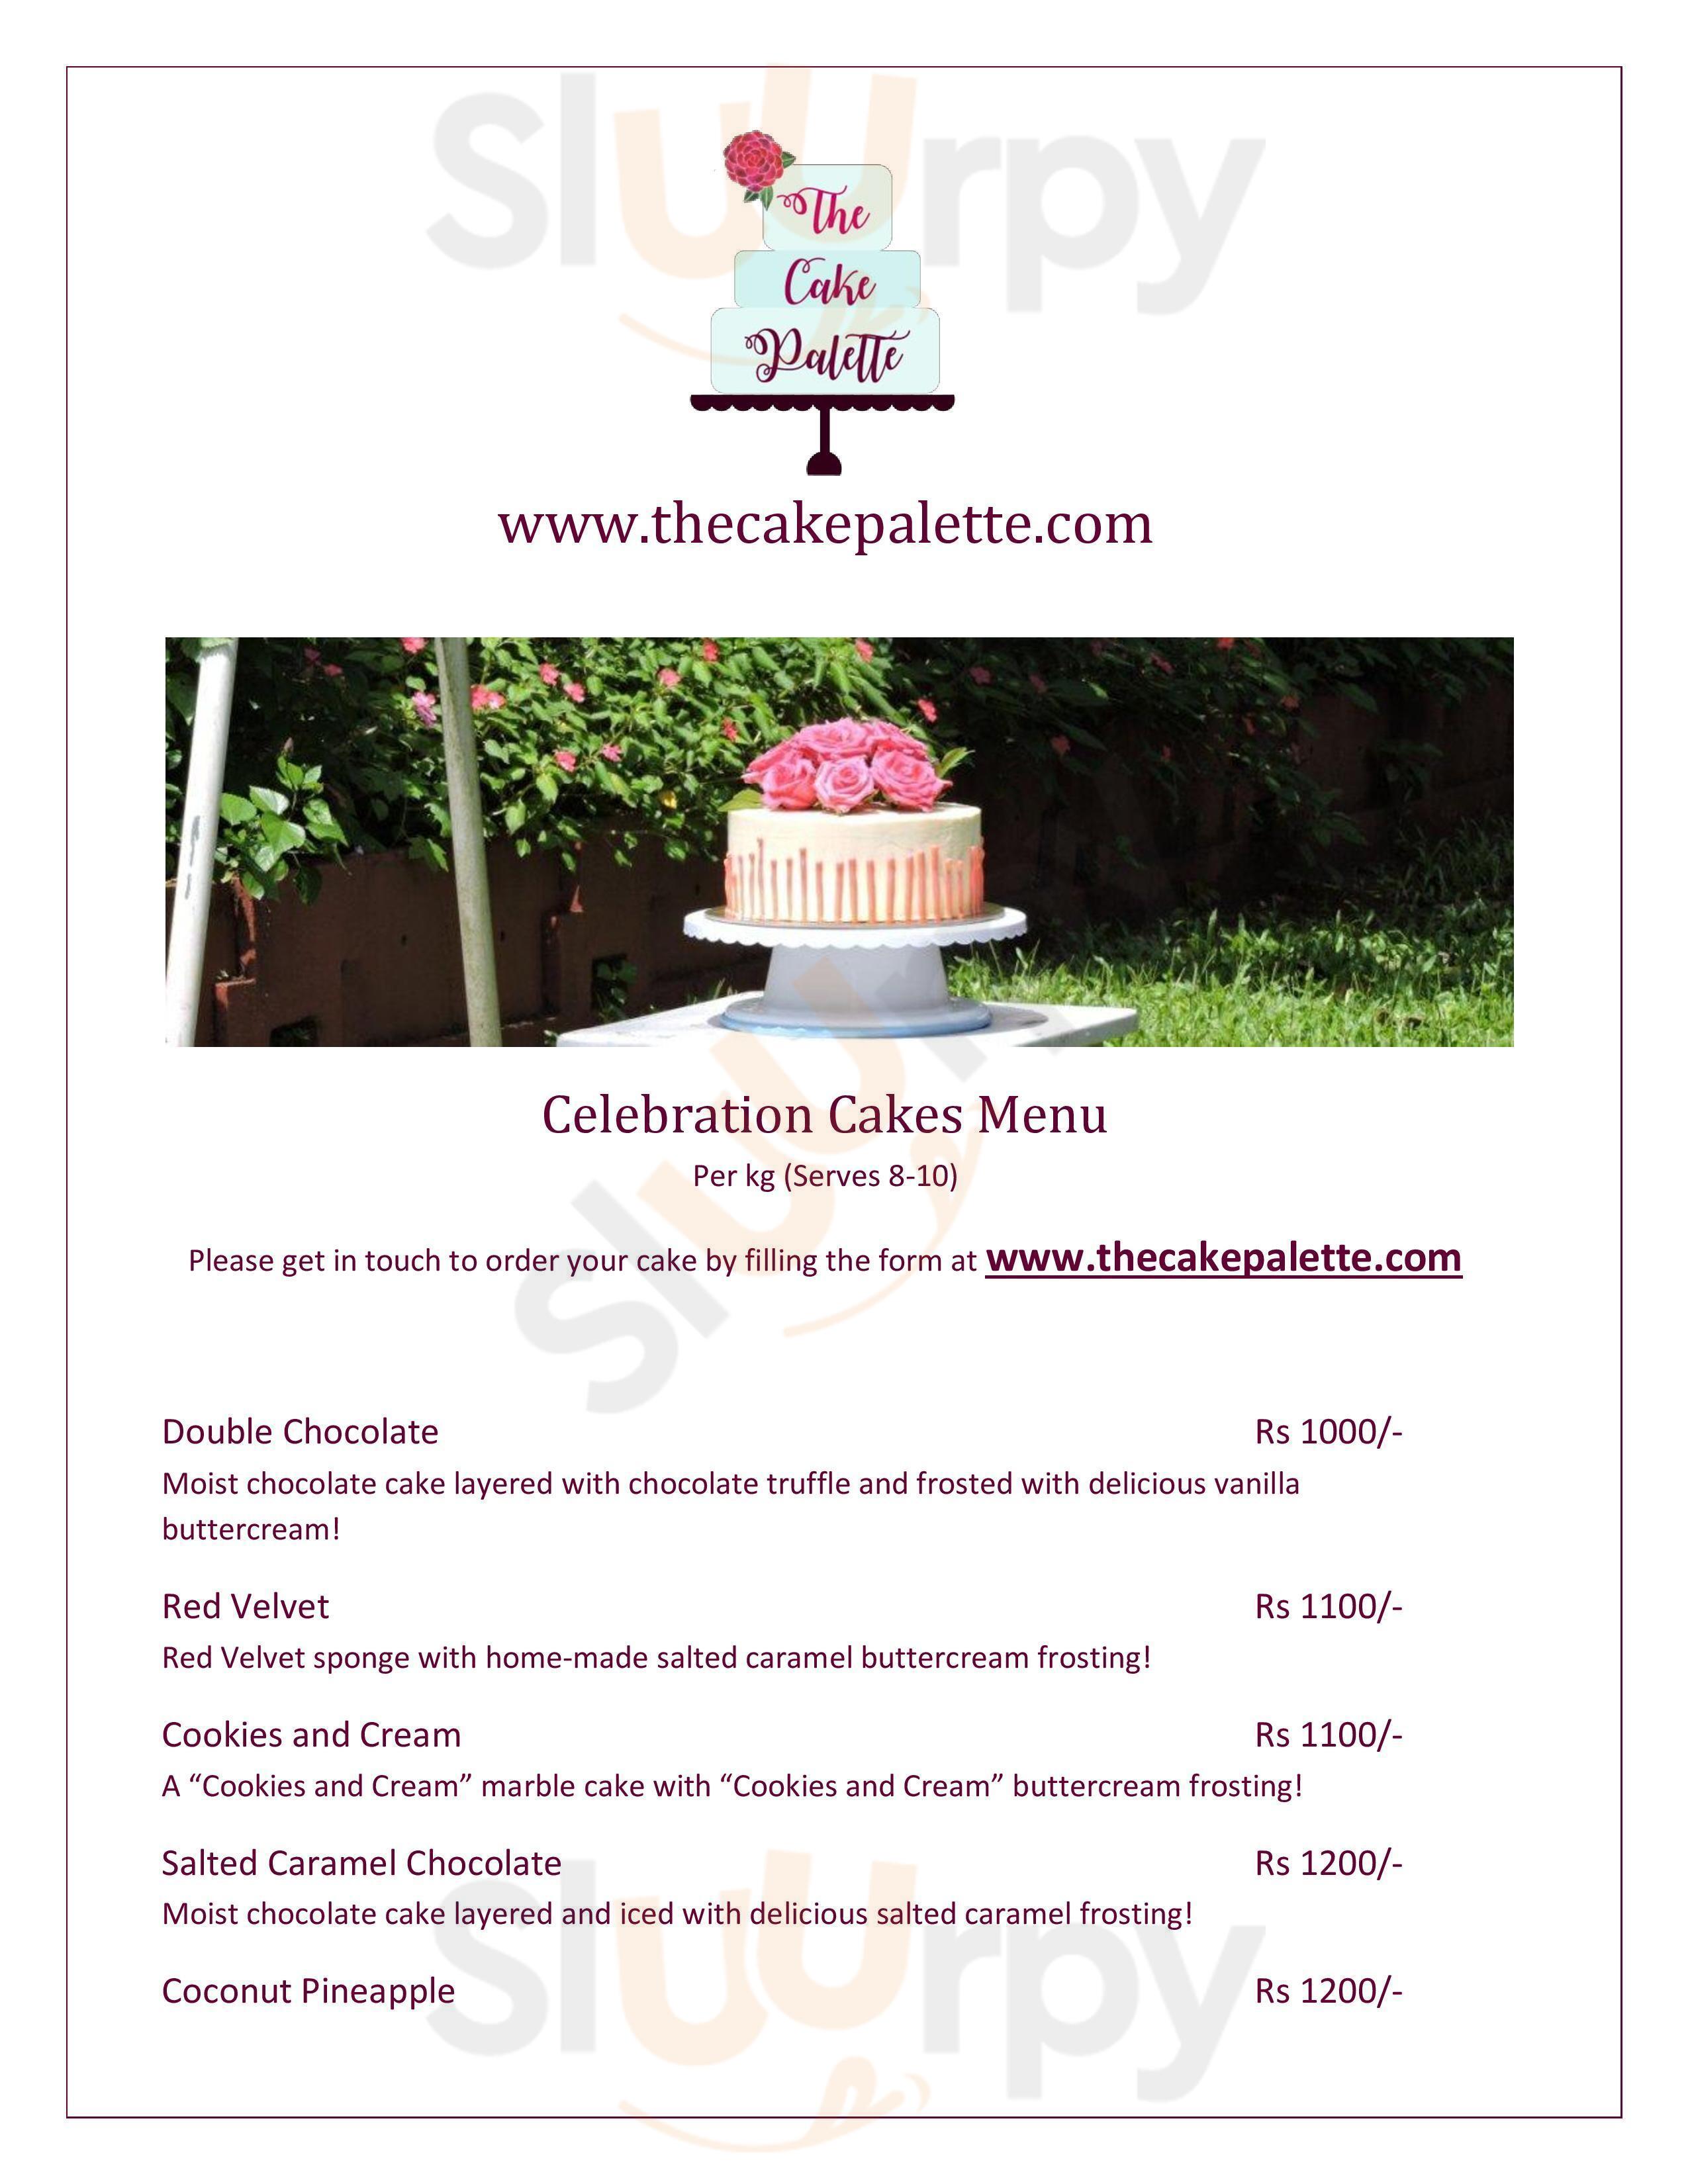 Vk's Cake Shop Cake and Celebration in Karla,Lonavala - Best Cake Shops in  Lonavala - Justdial